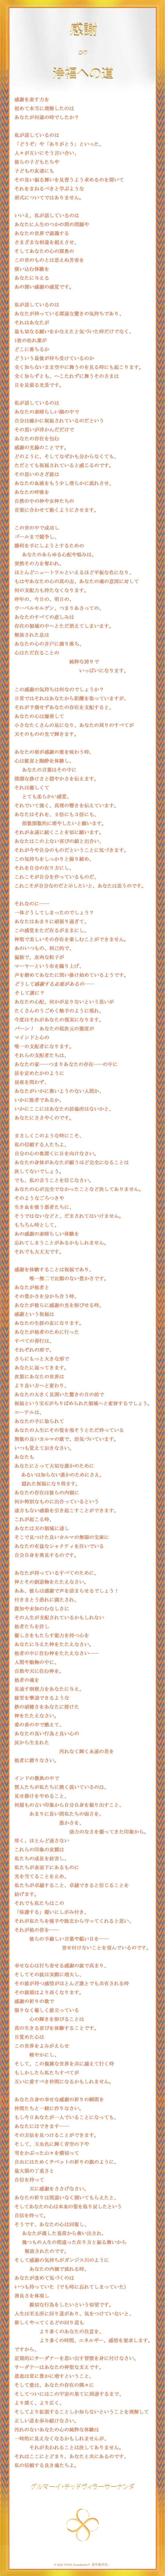 Japanese Poem